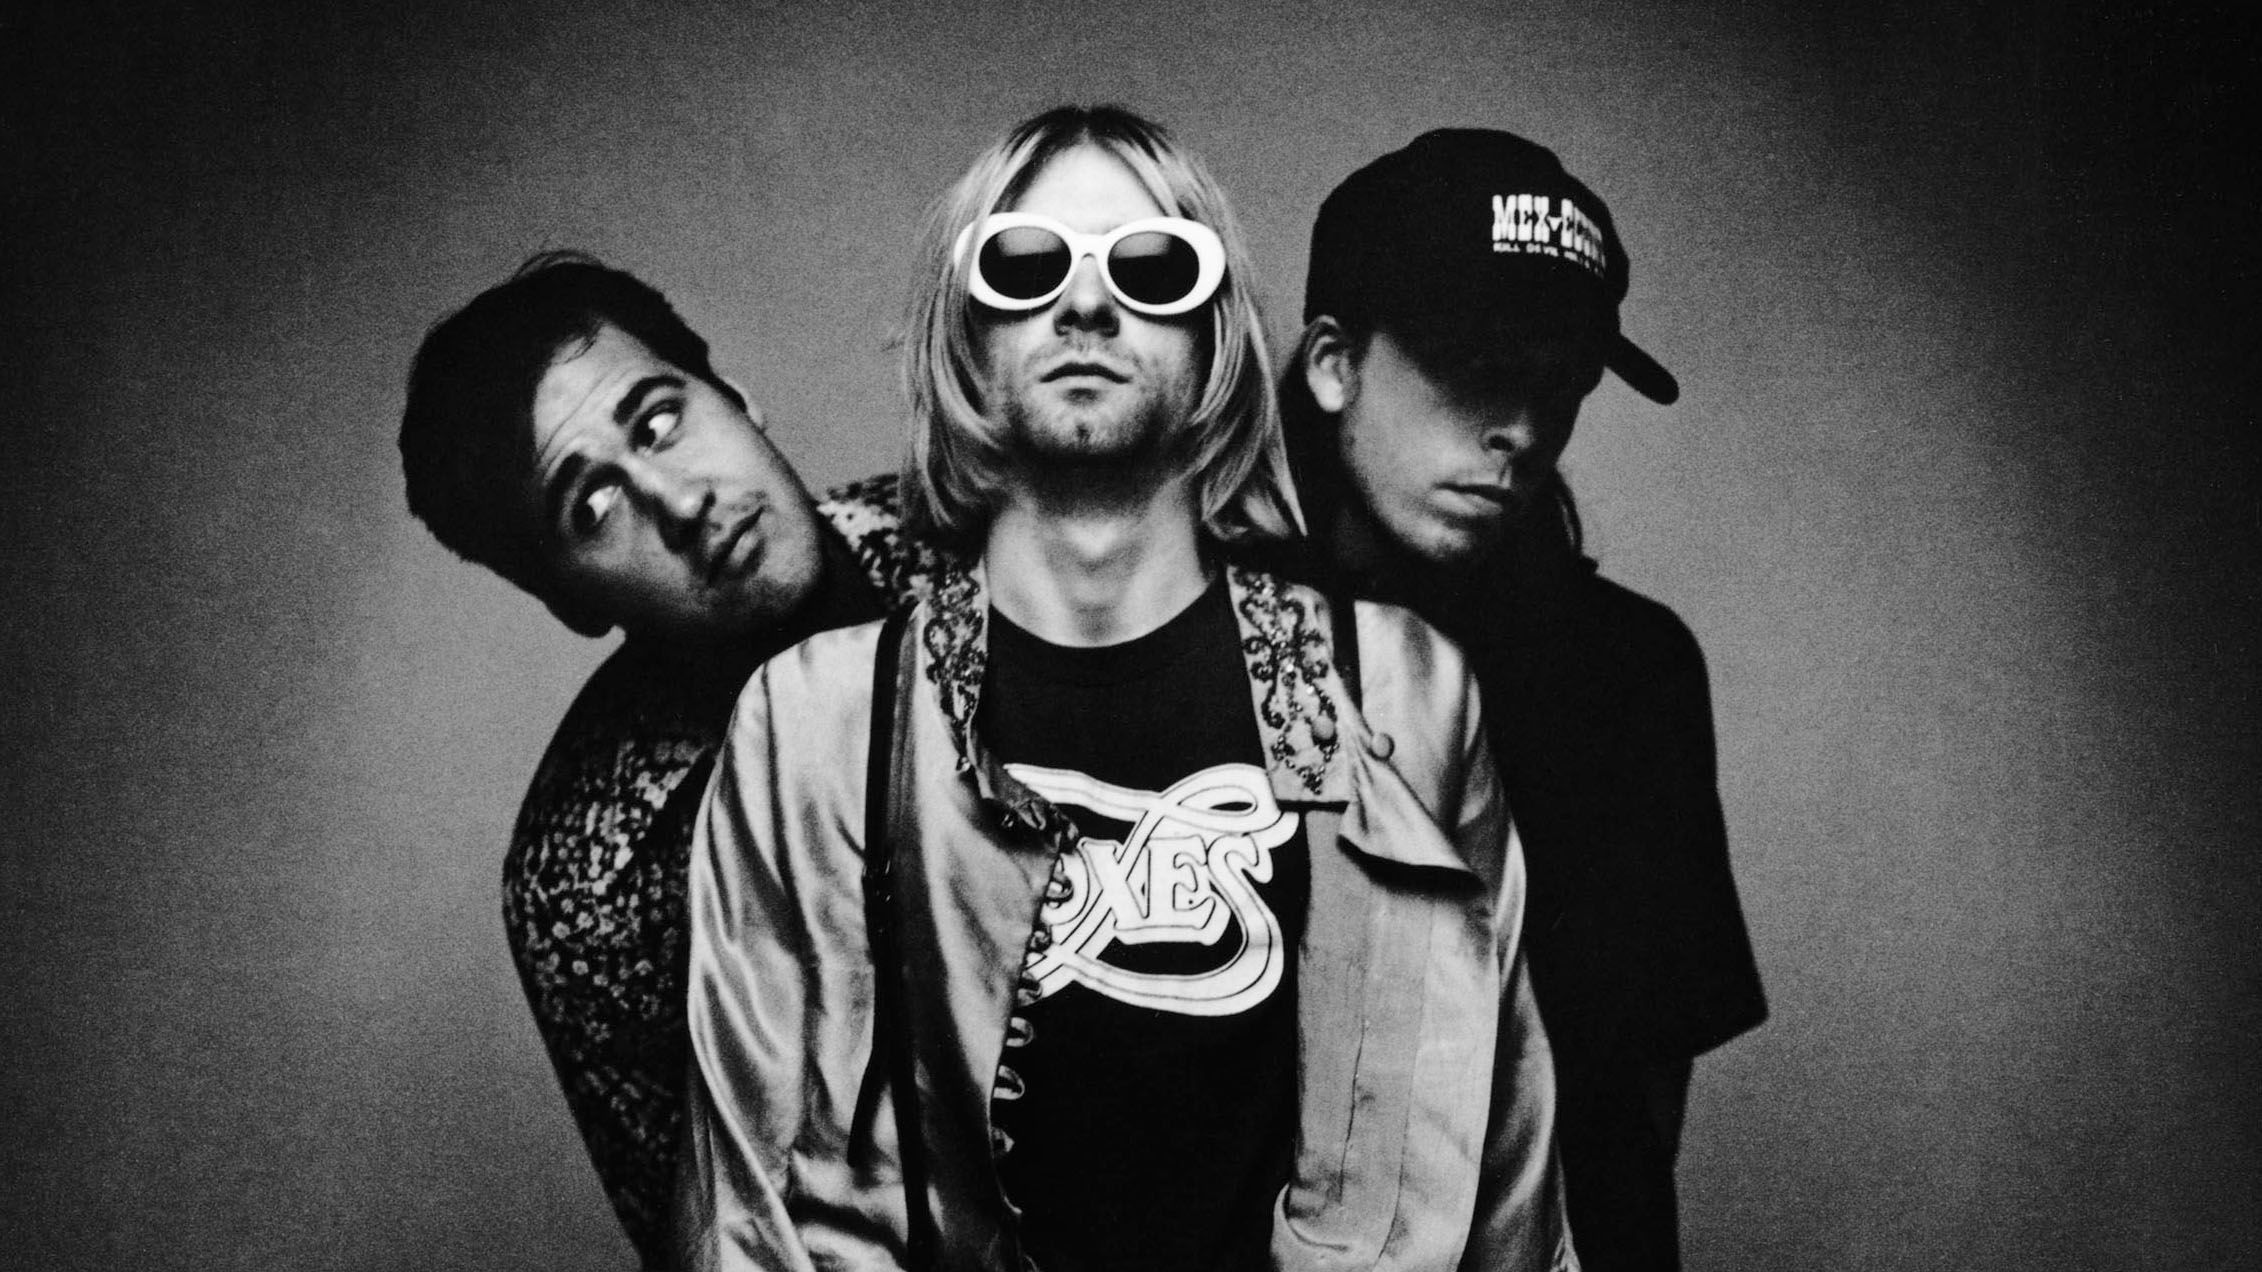 Ecco perché continuiamo ad amare i Nirvana (in ogni caso, meglio ascoltare “All Apologies”): Matteo Fais dialoga con Paolo Giovanazzi, che non ha scritto la solita biografia di Cobain & Co.